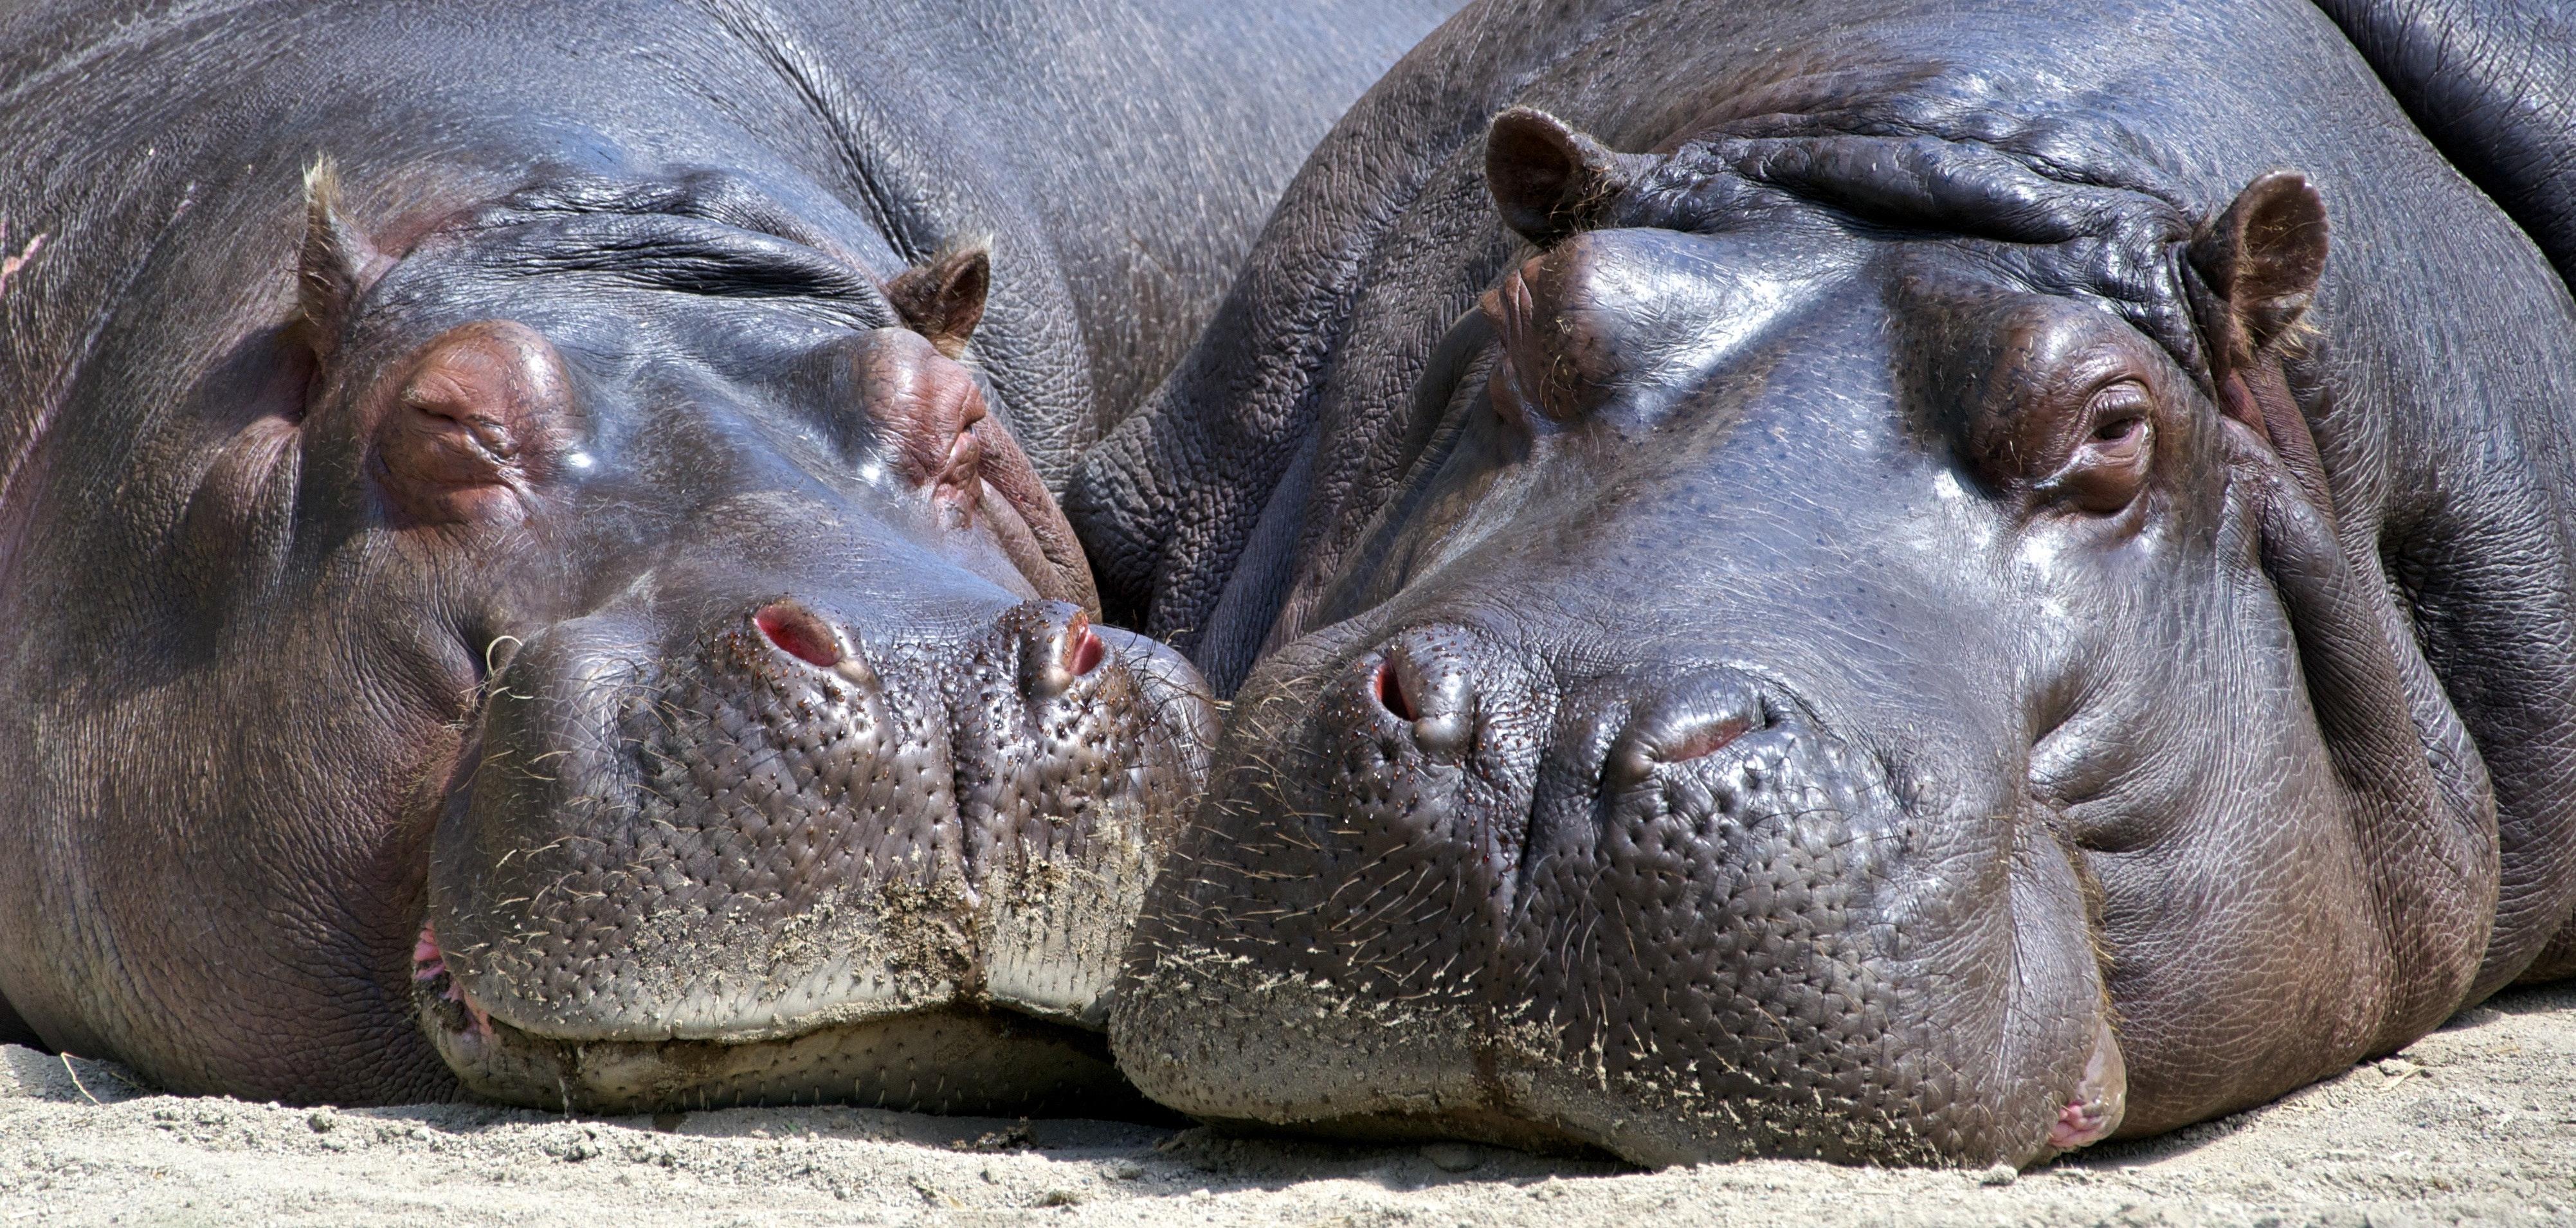 Black Hippopotamus Laying on Ground during Daytime · Free